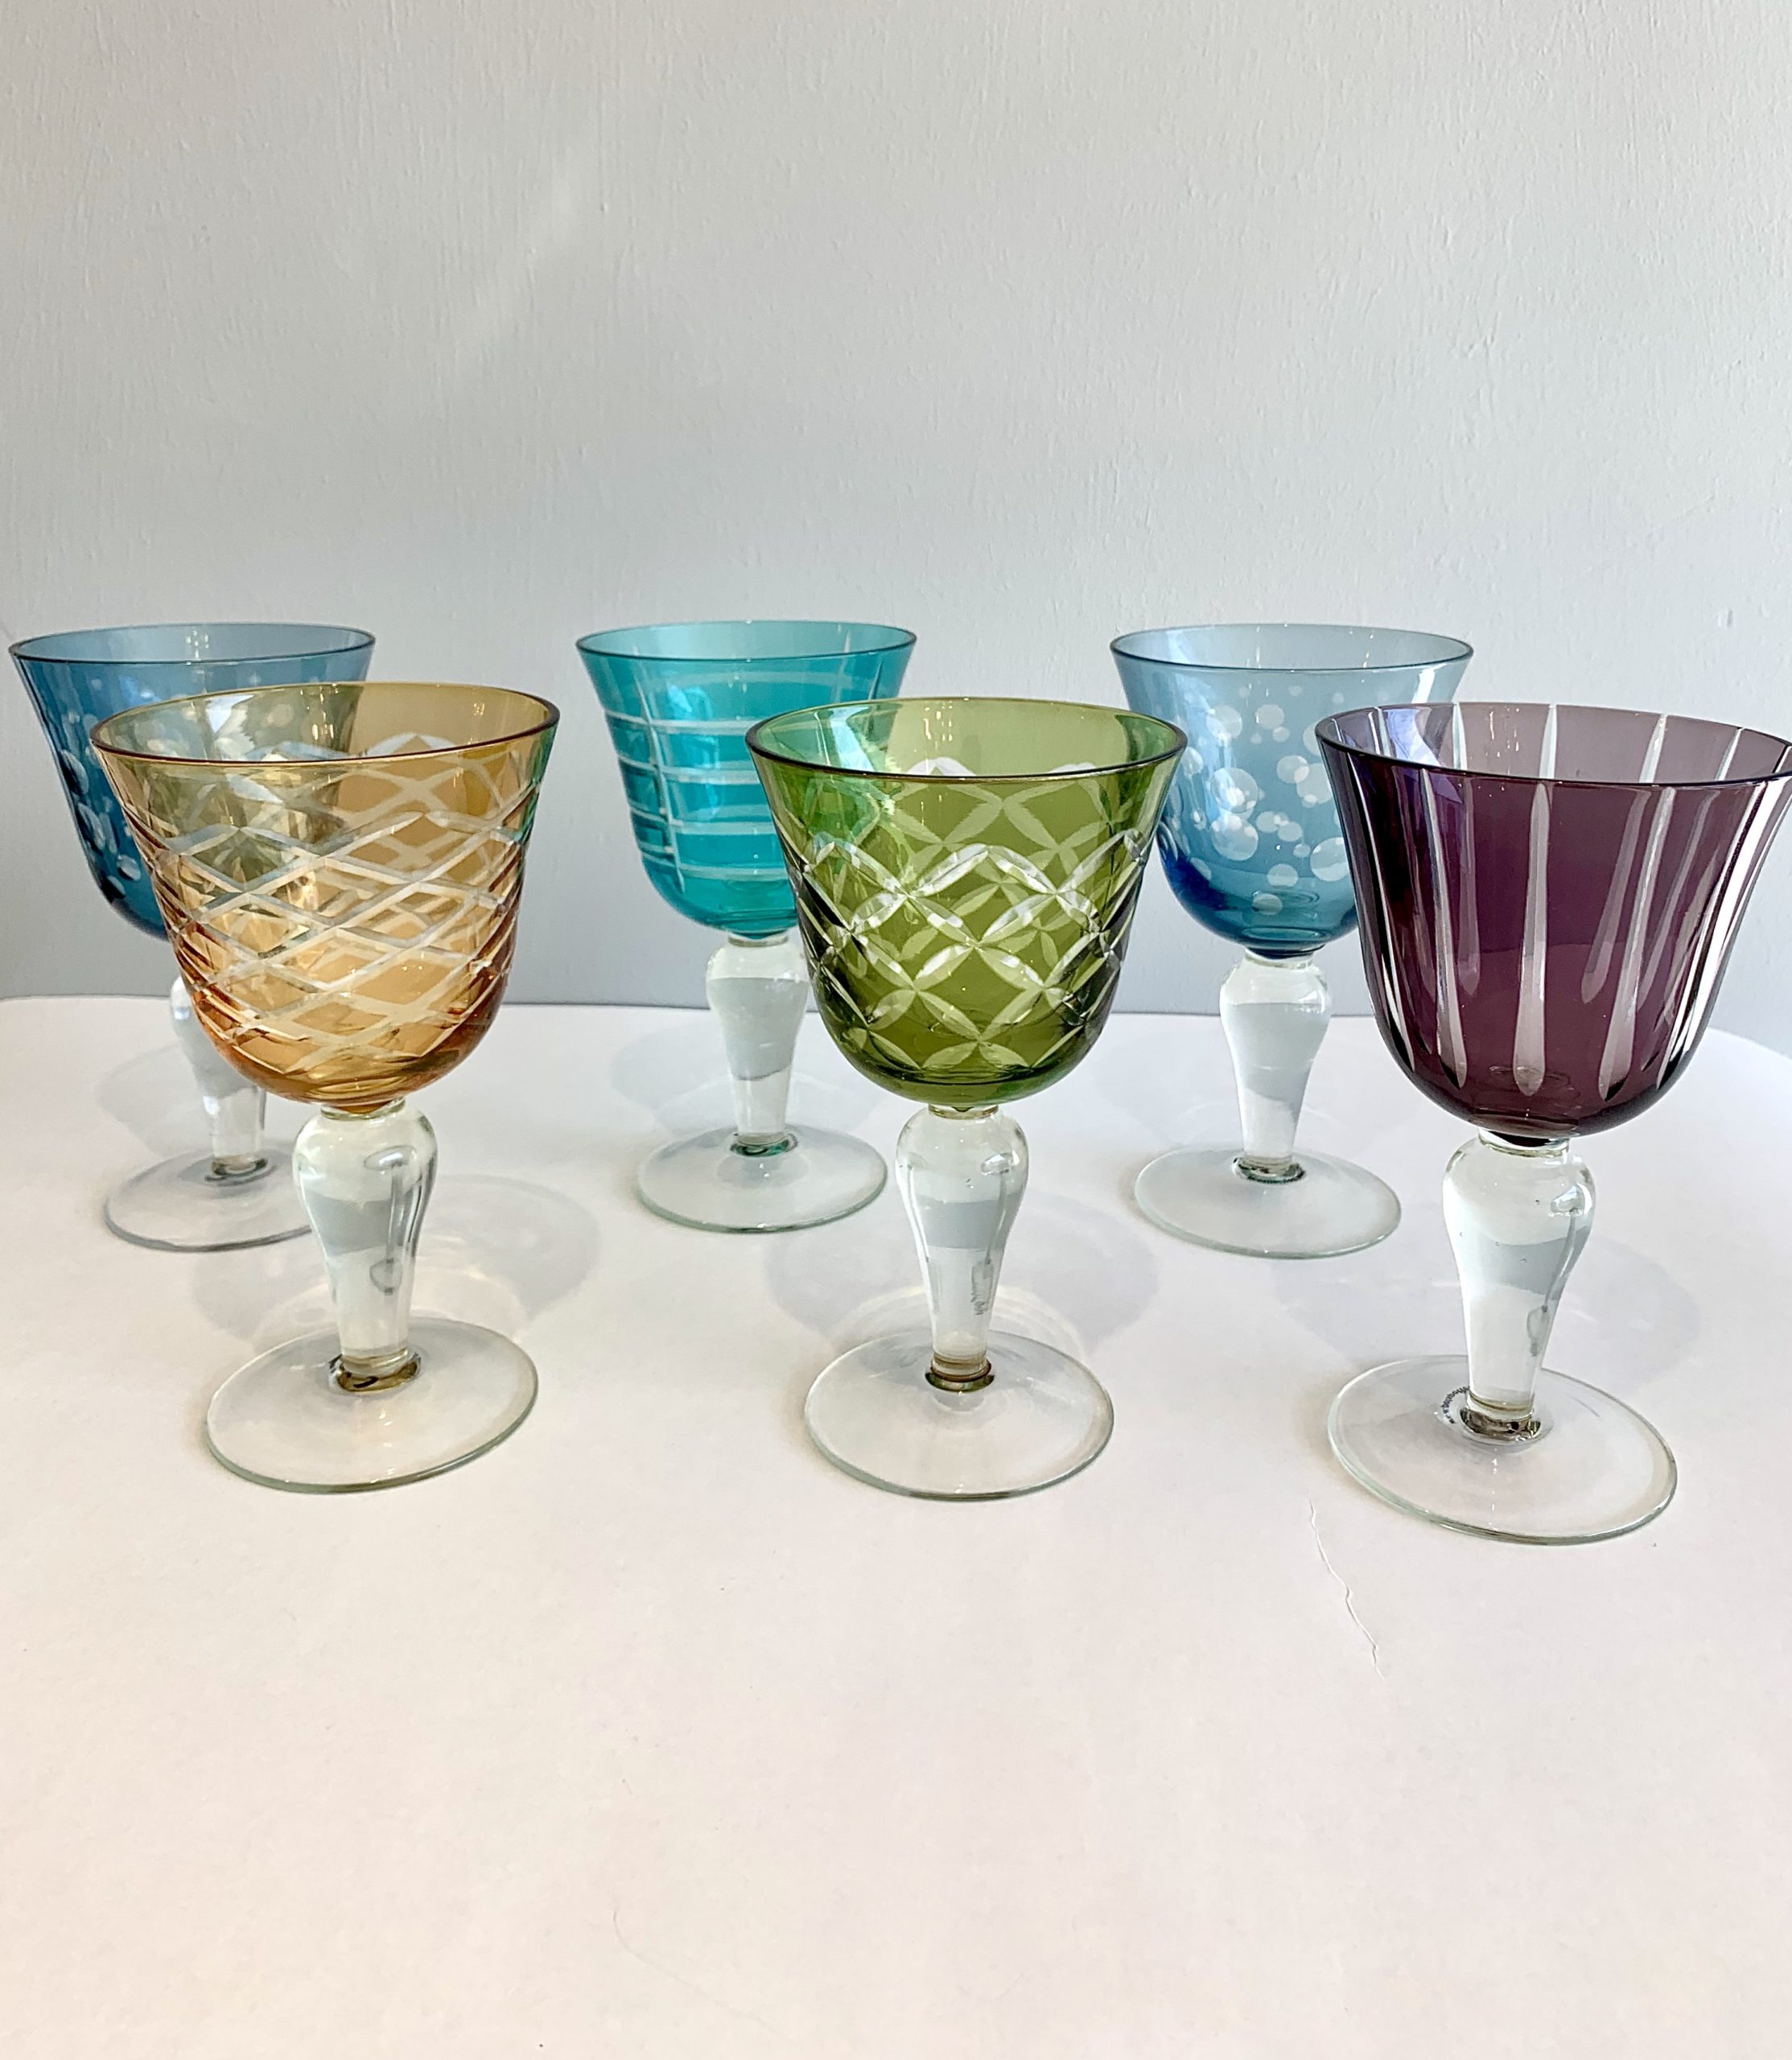 Hermosas copas de cristal tallado